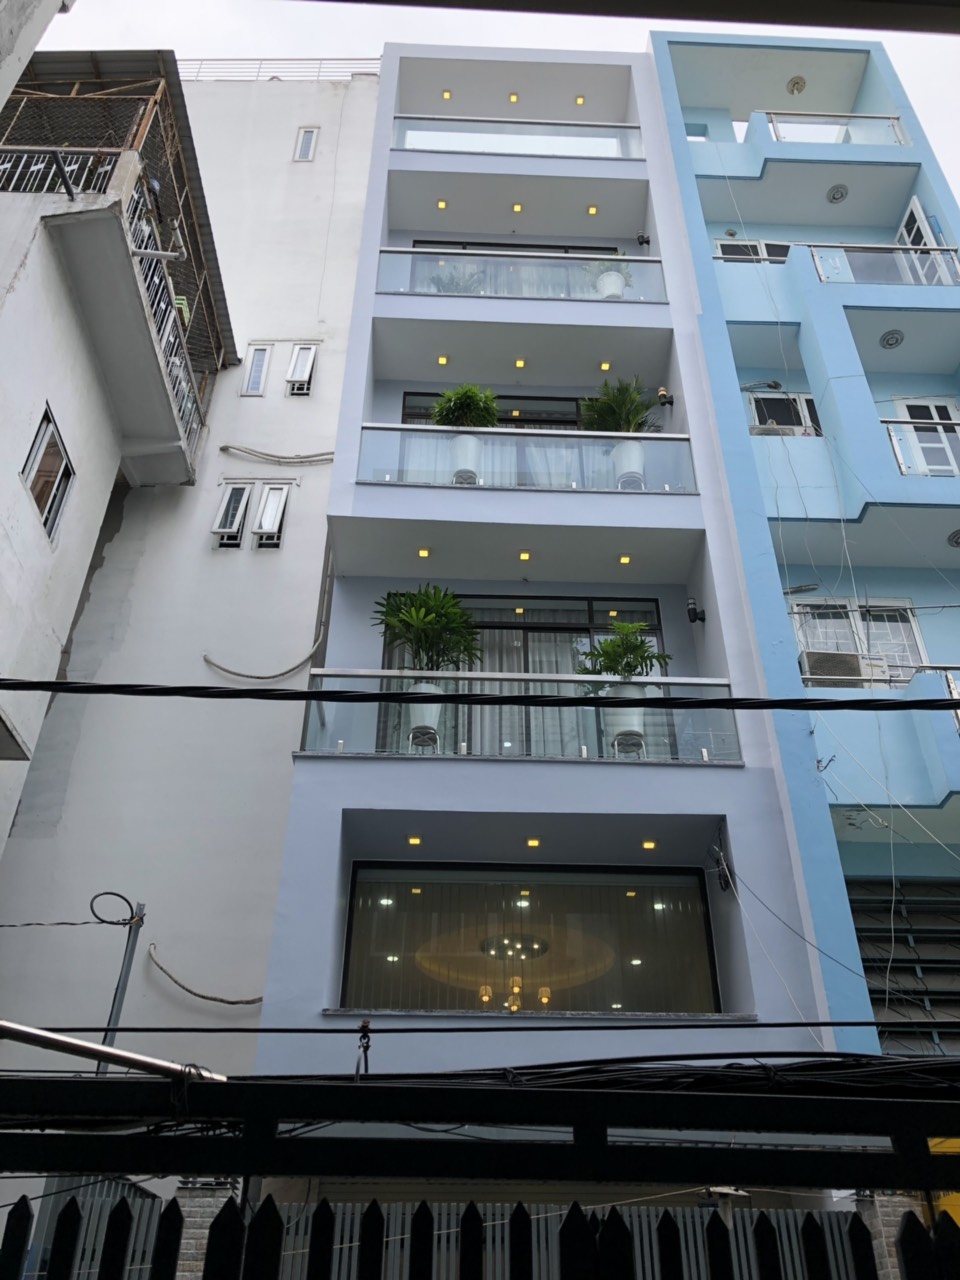 Chính chủ bán nhà mặt tiền khu K300 - đường Nguyễn Minh Hoàng, Q. Tân Bình, 3 lầu đẹp